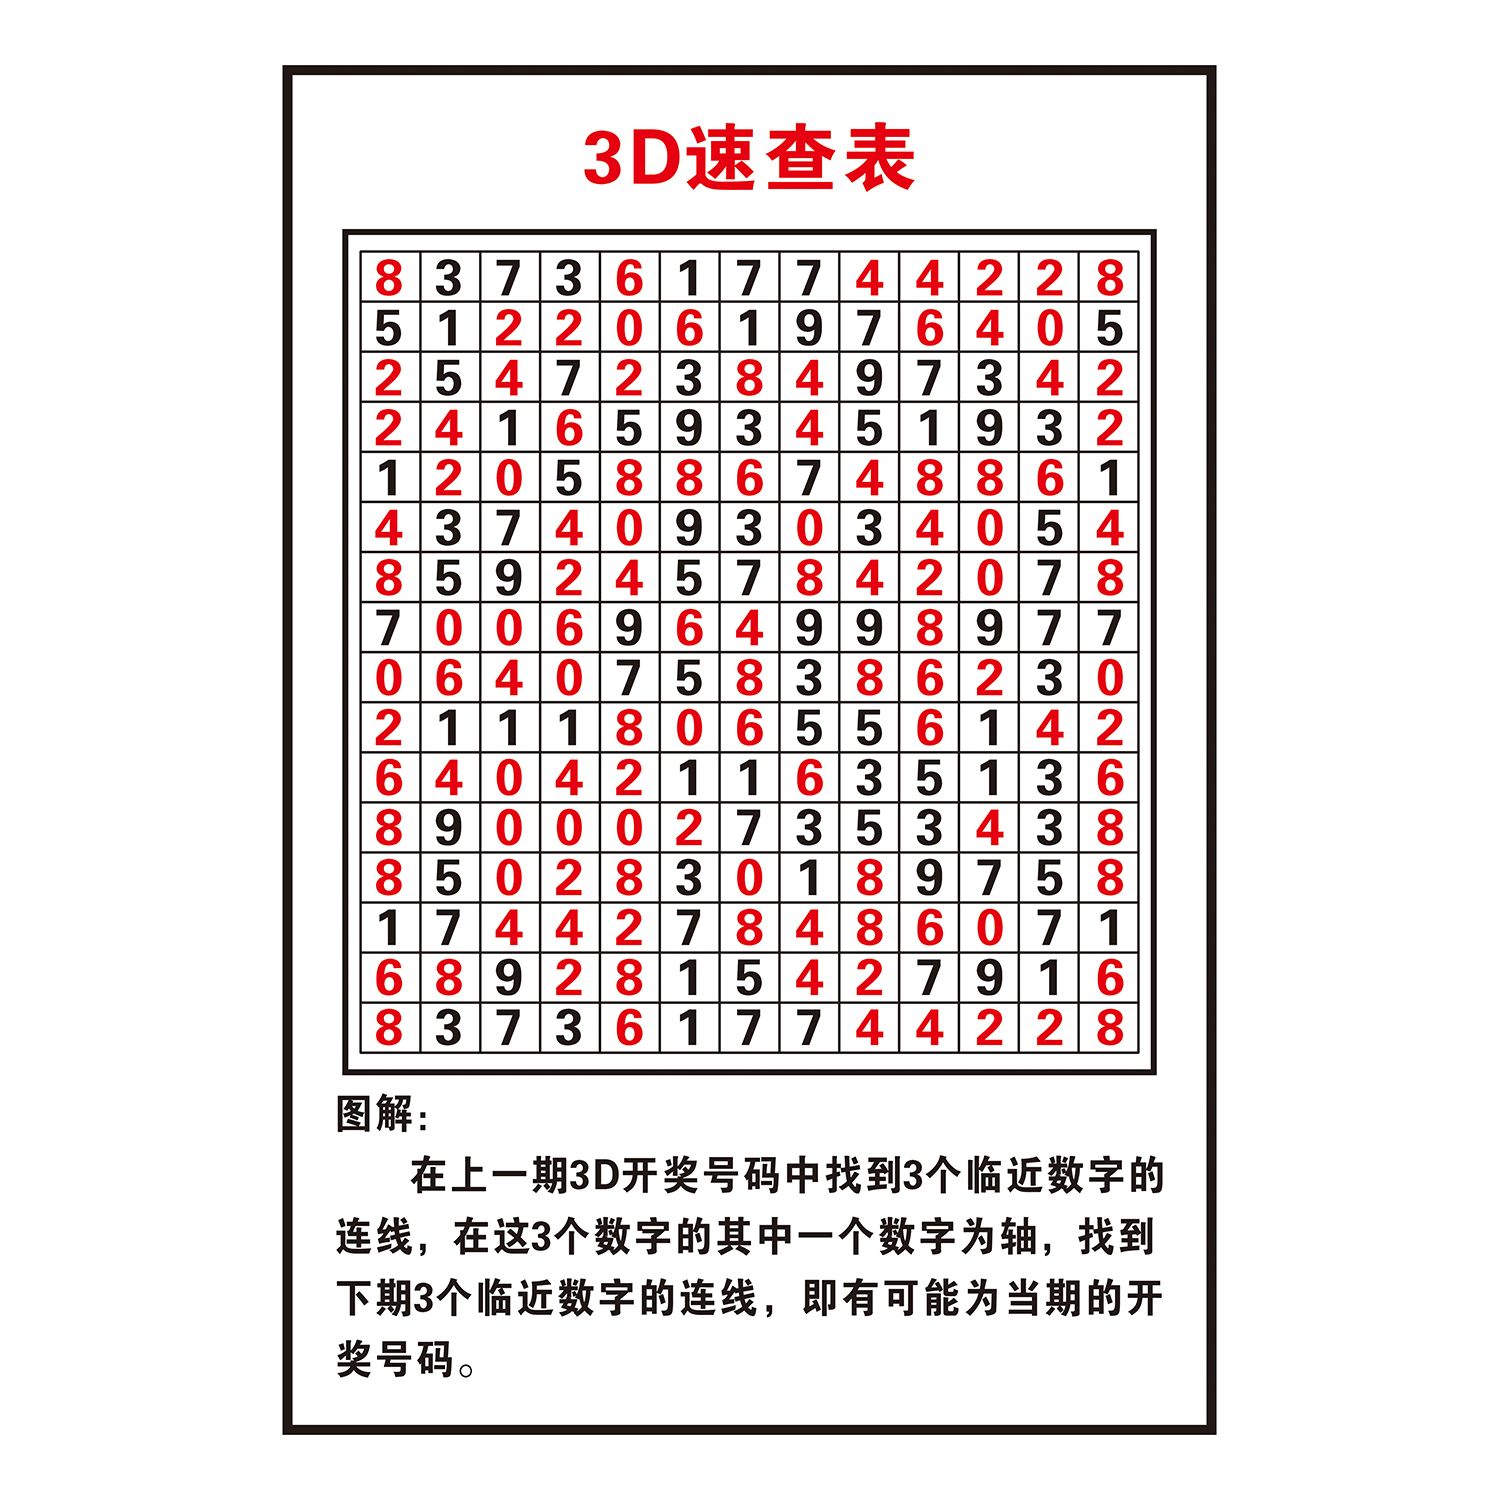 福彩彩票店投注站用品3D玩法介绍速查表和值表走势图寻宝宣传海报